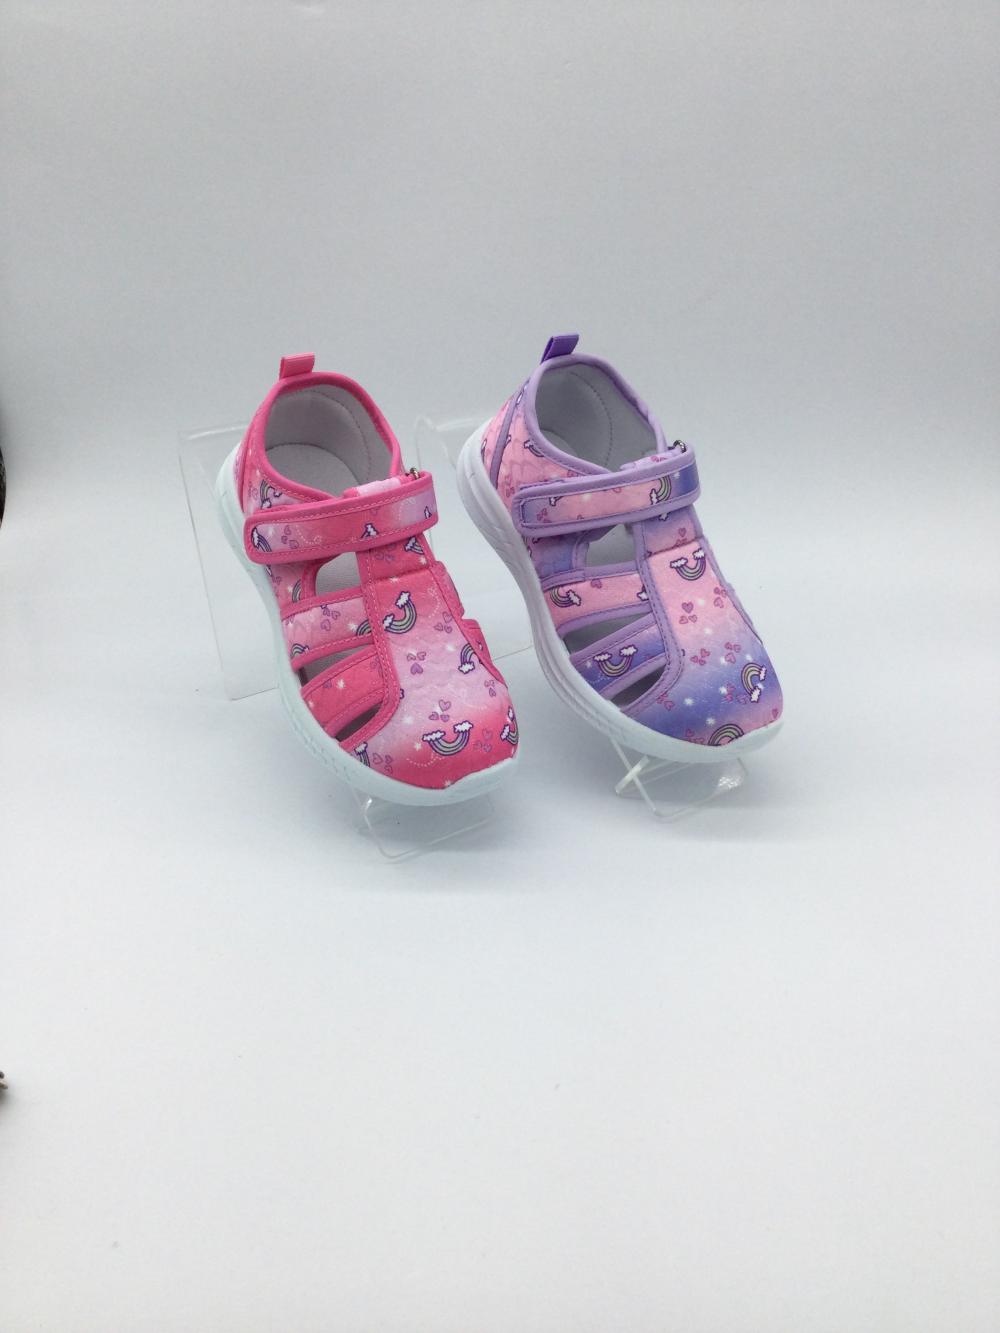 Wholesale bébé dessin animé chaussure nouvelle fille sandale